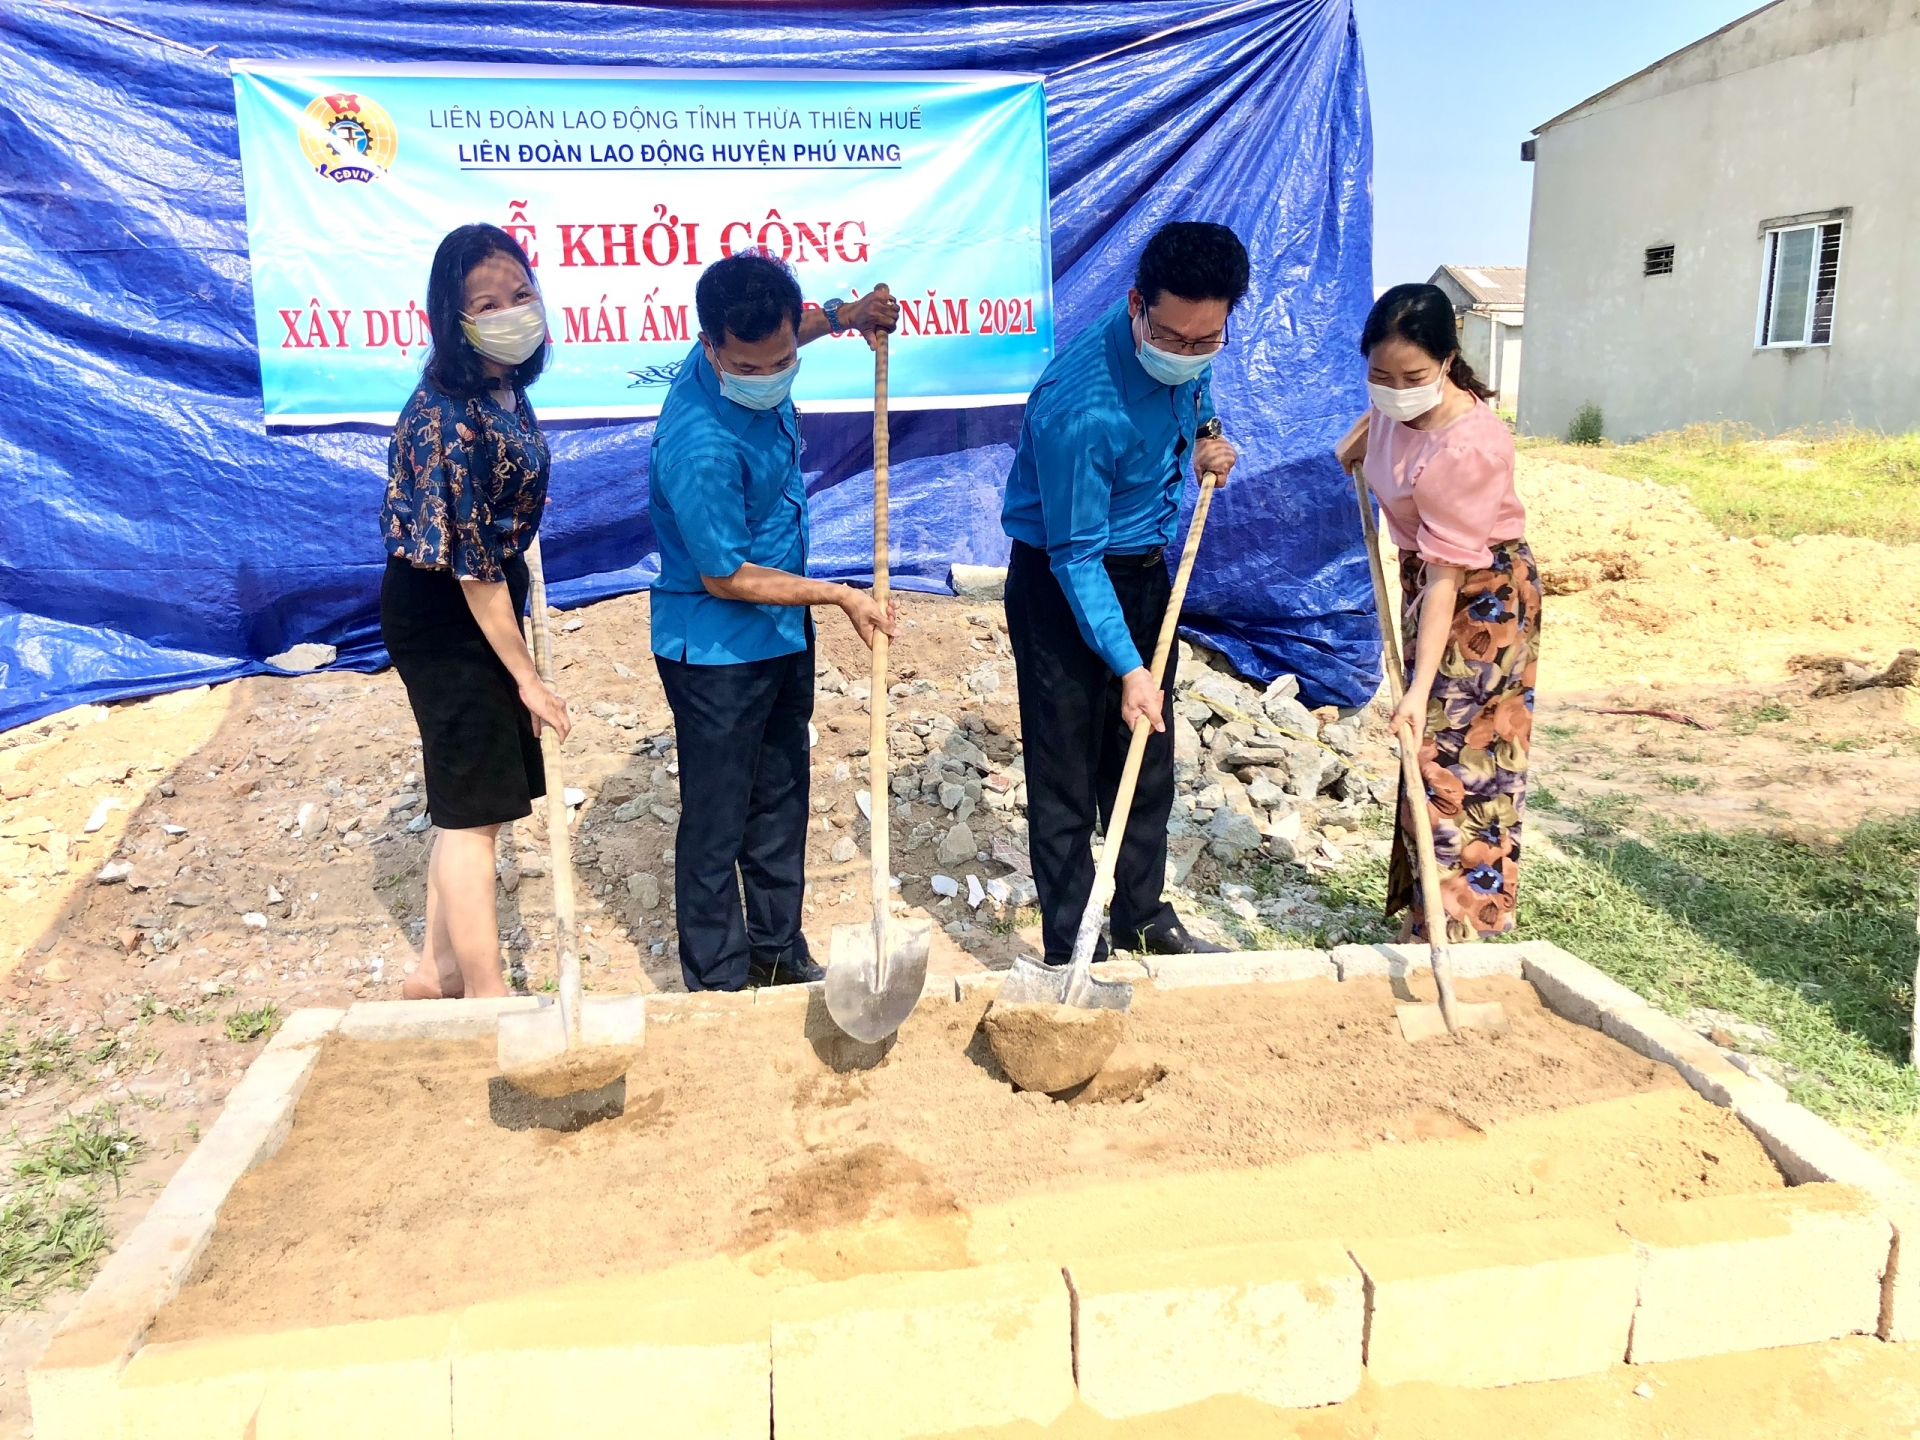 LĐLĐ tỉnh Thừa Thiên Huế: Hỗ trợ hơn 500 NLĐ có hoàn cảnh khó khăn